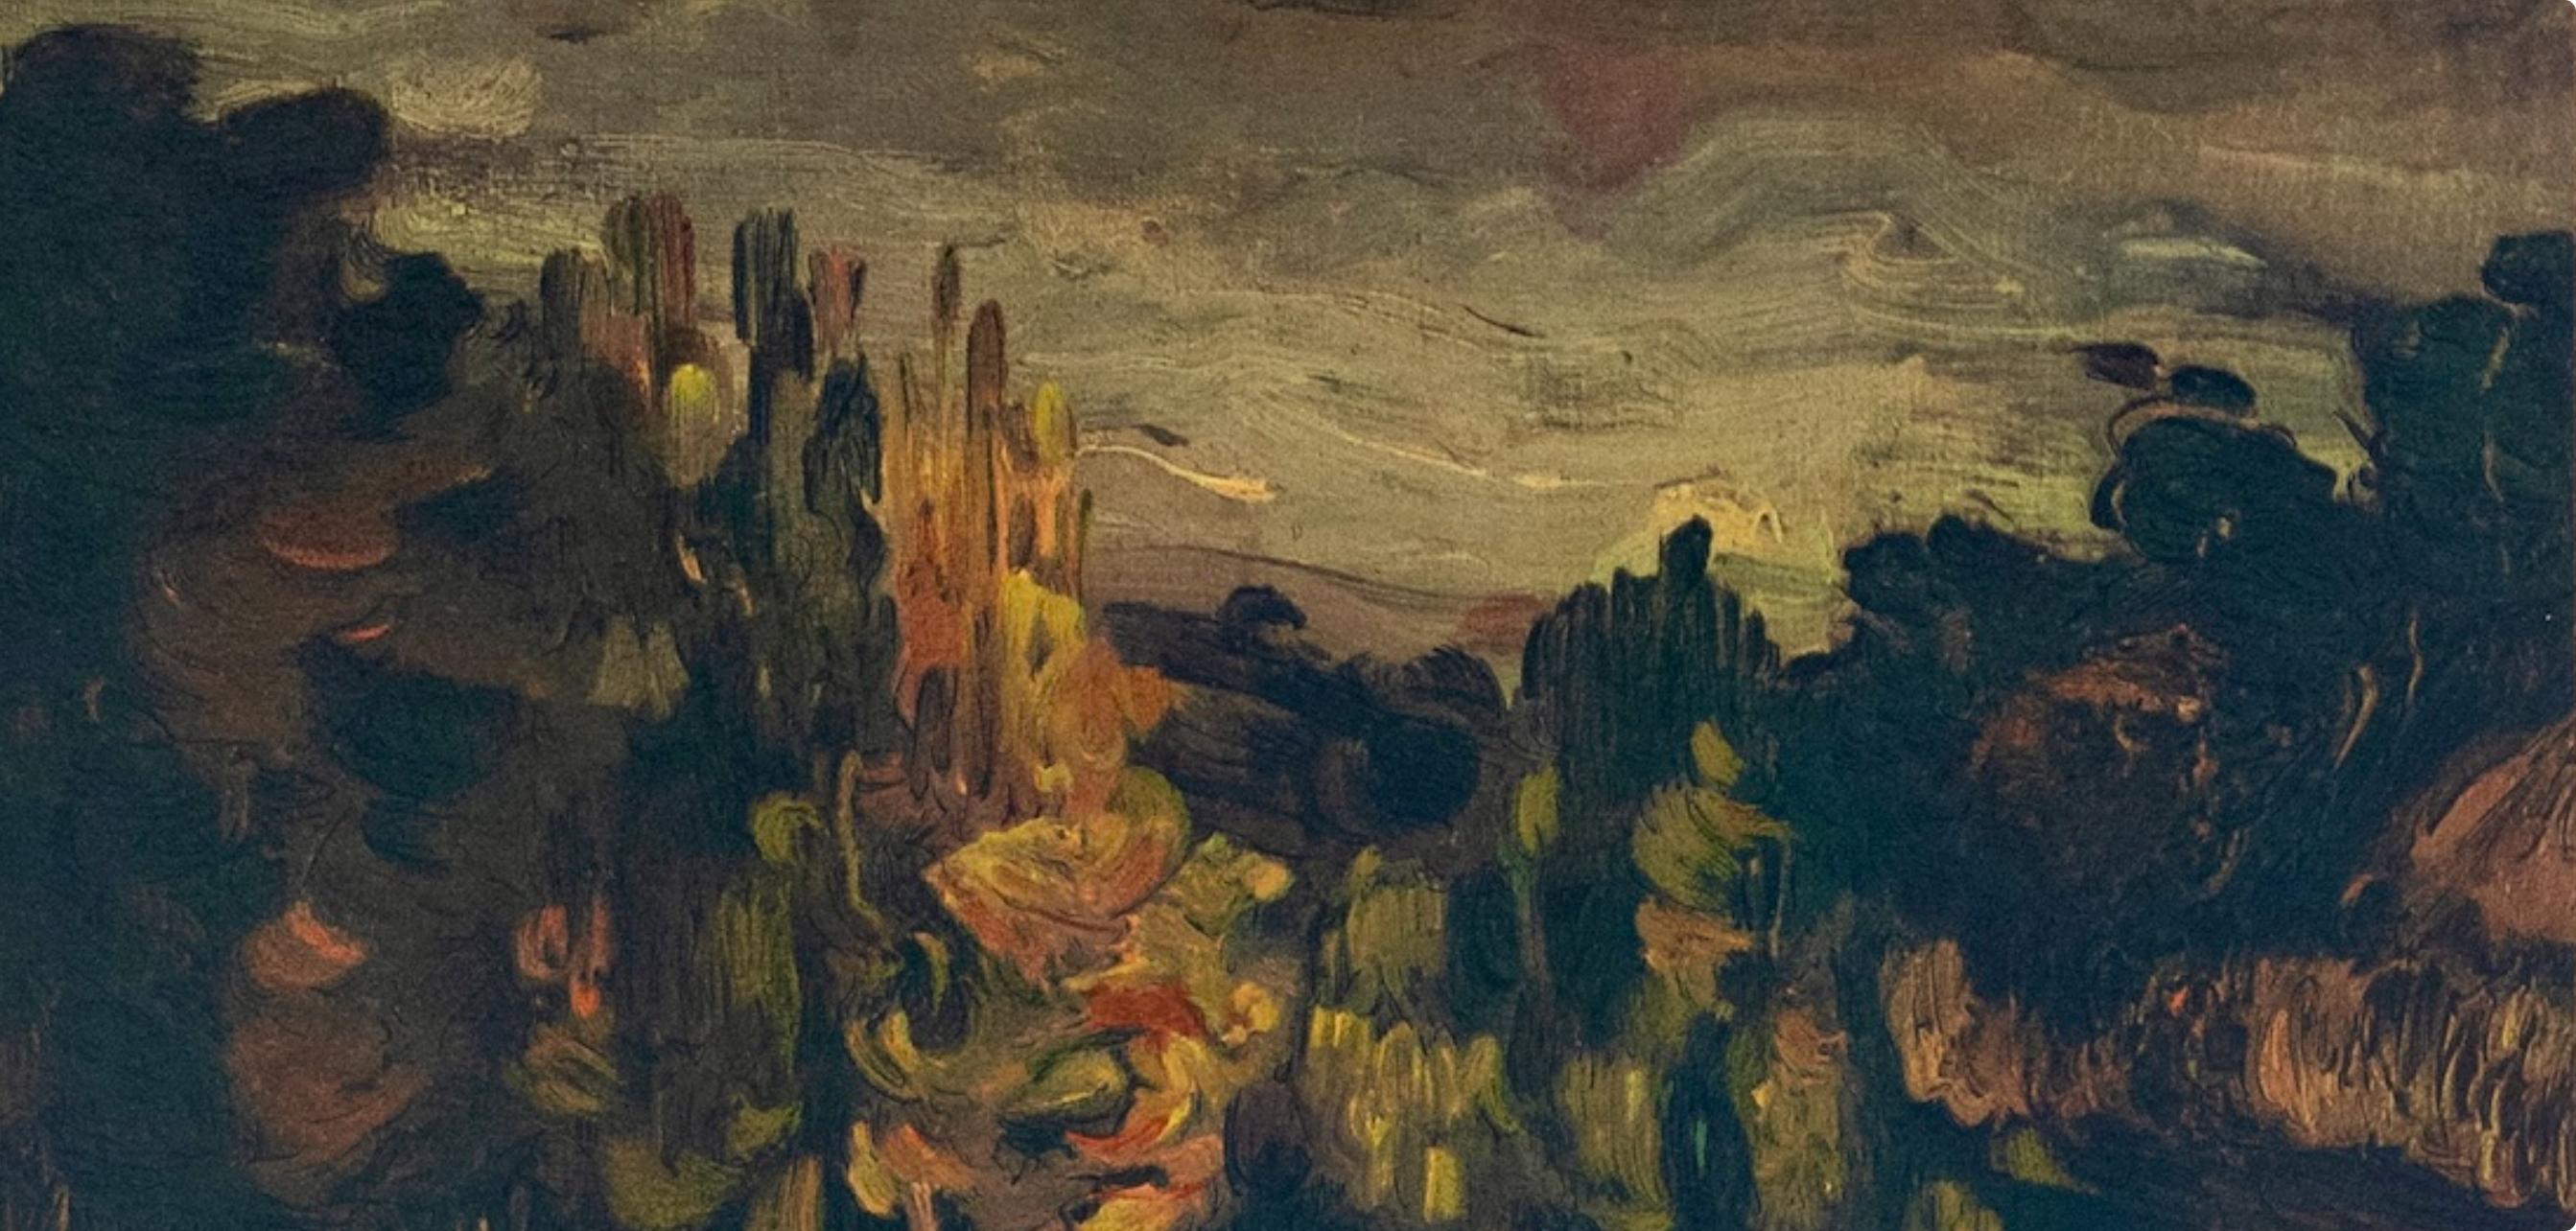 Cézanne, Paysage à Aix, Les Réalistes Lyriques (after) - Print by Paul Cézanne